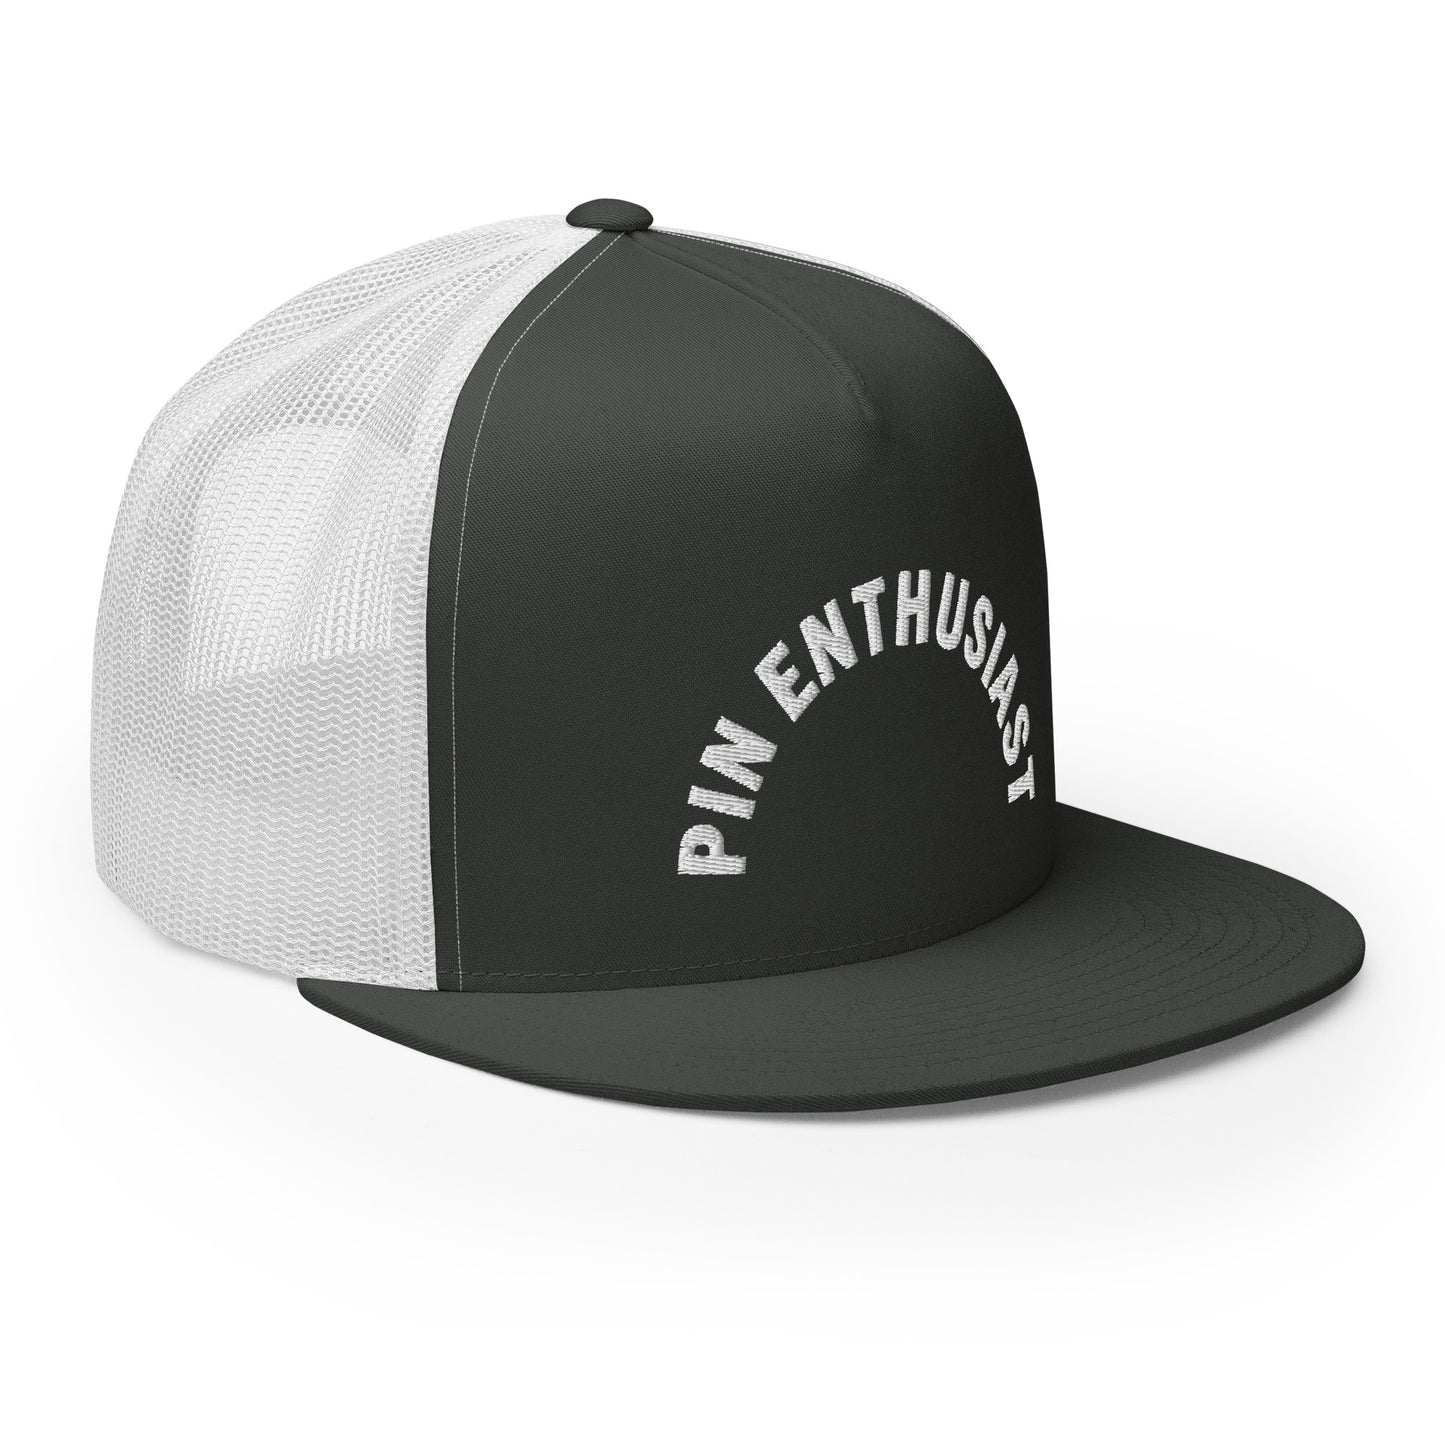 Pin Enthusiast - Trucker Cap - Custom Hat PinsPin Enthusiast - Trucker Cap - Custom Hat PinsCustom Hat Pins